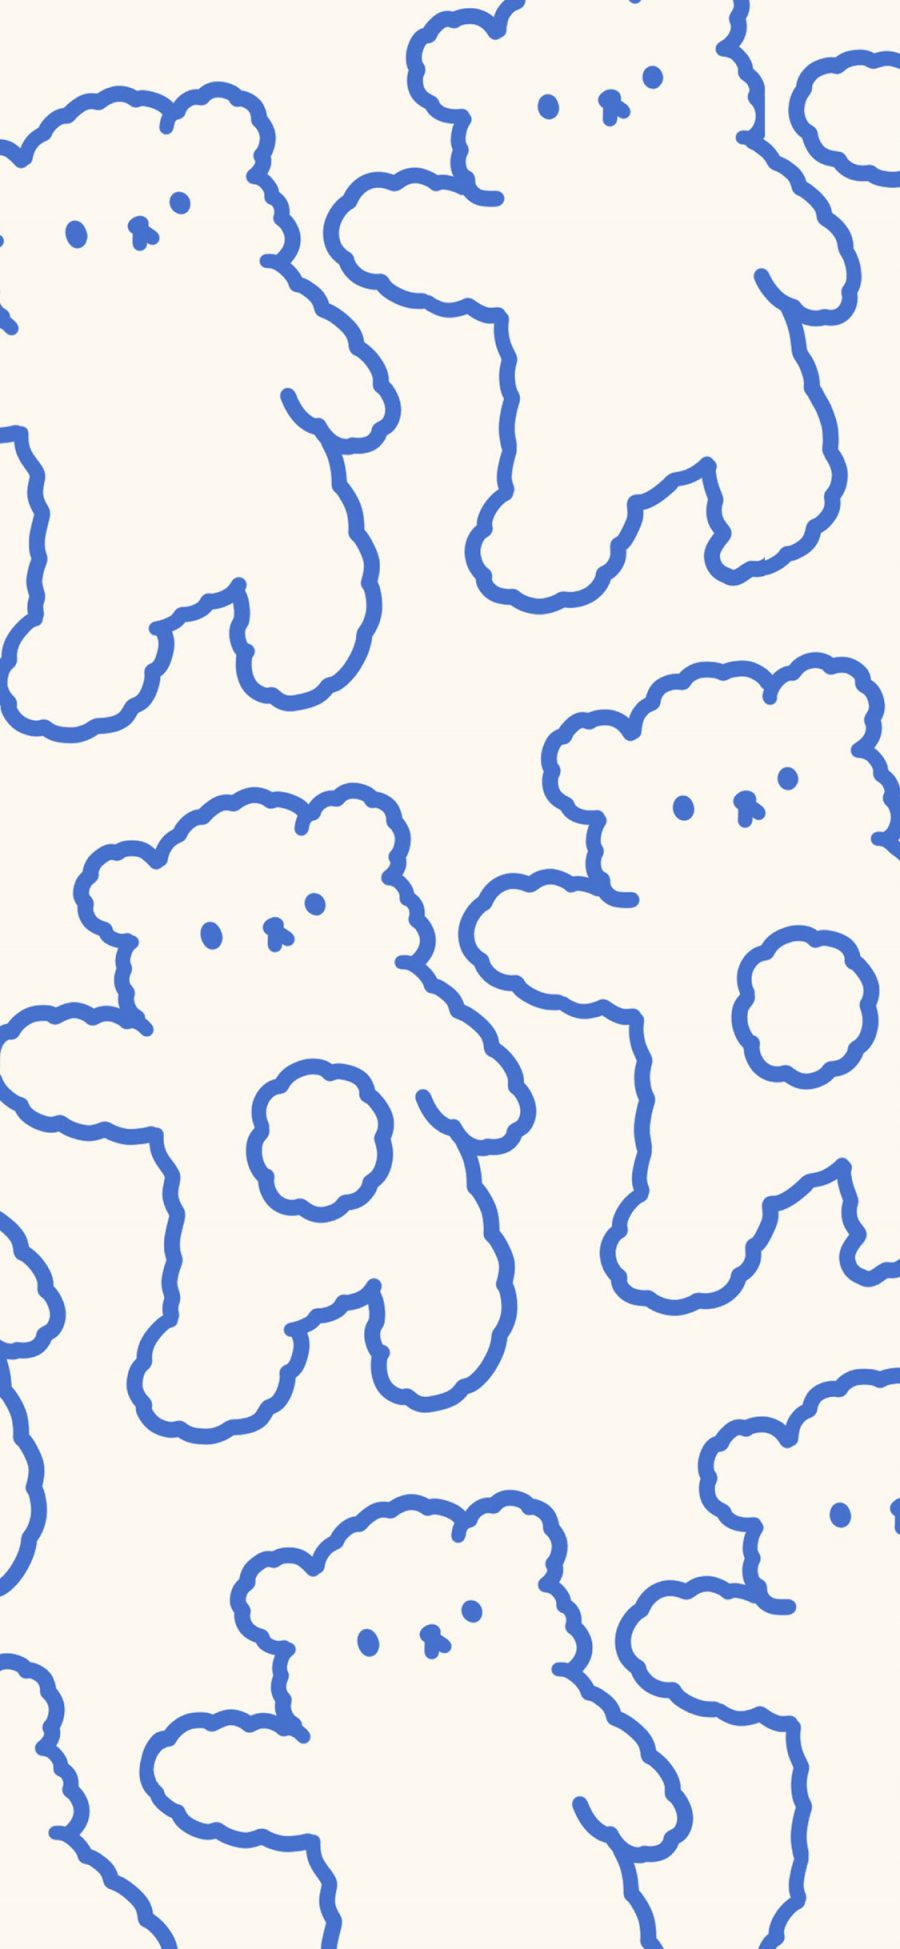 [2436×1125]卡通 小熊 简笔 平铺 苹果手机动漫壁纸图片